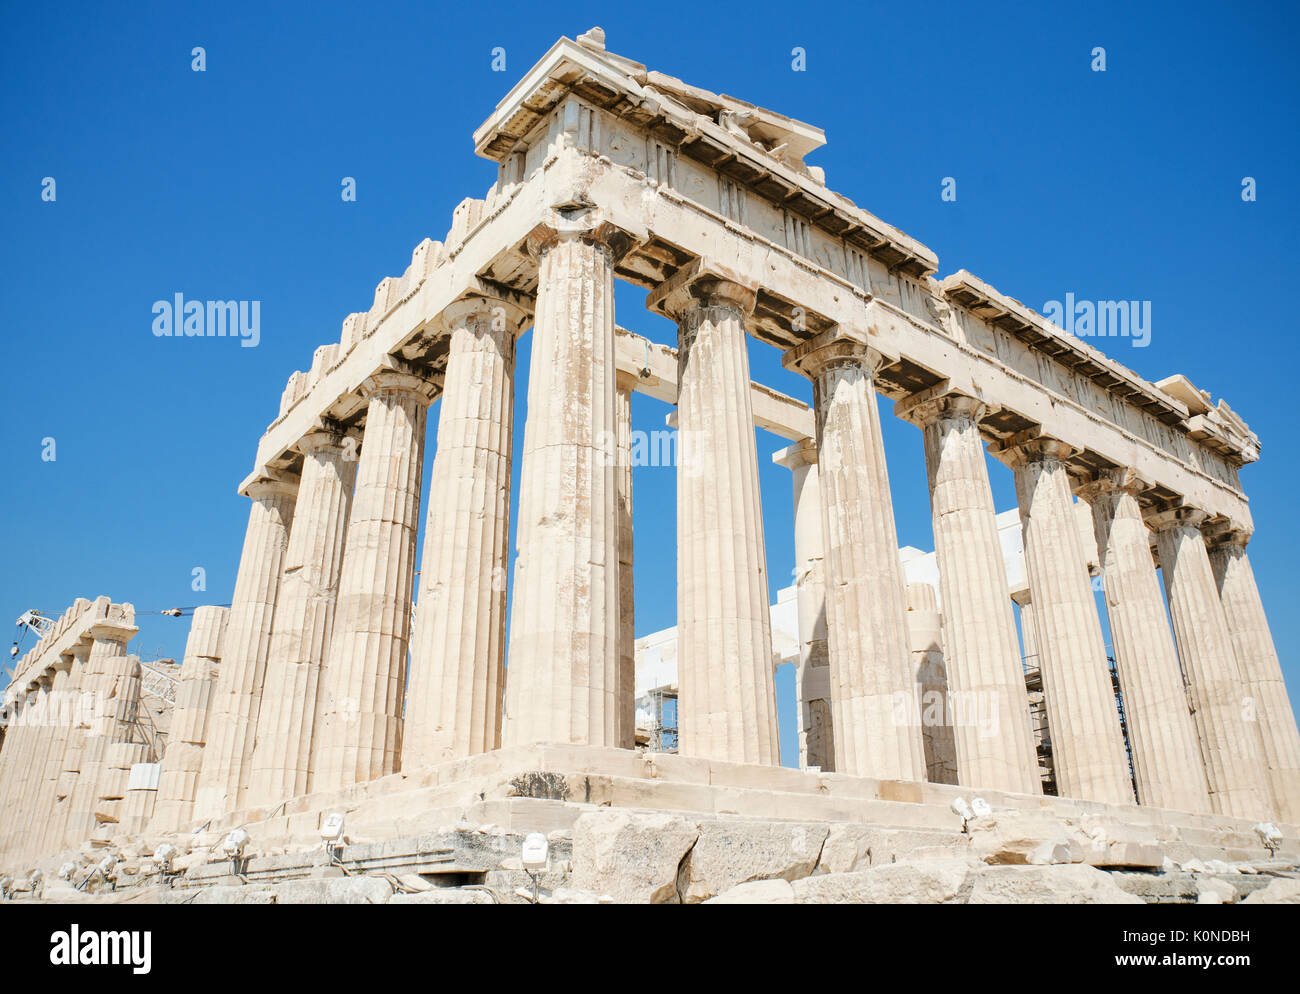 Famous Parthenon temple in the Acropolis, Athens, Greece. Stock Photo